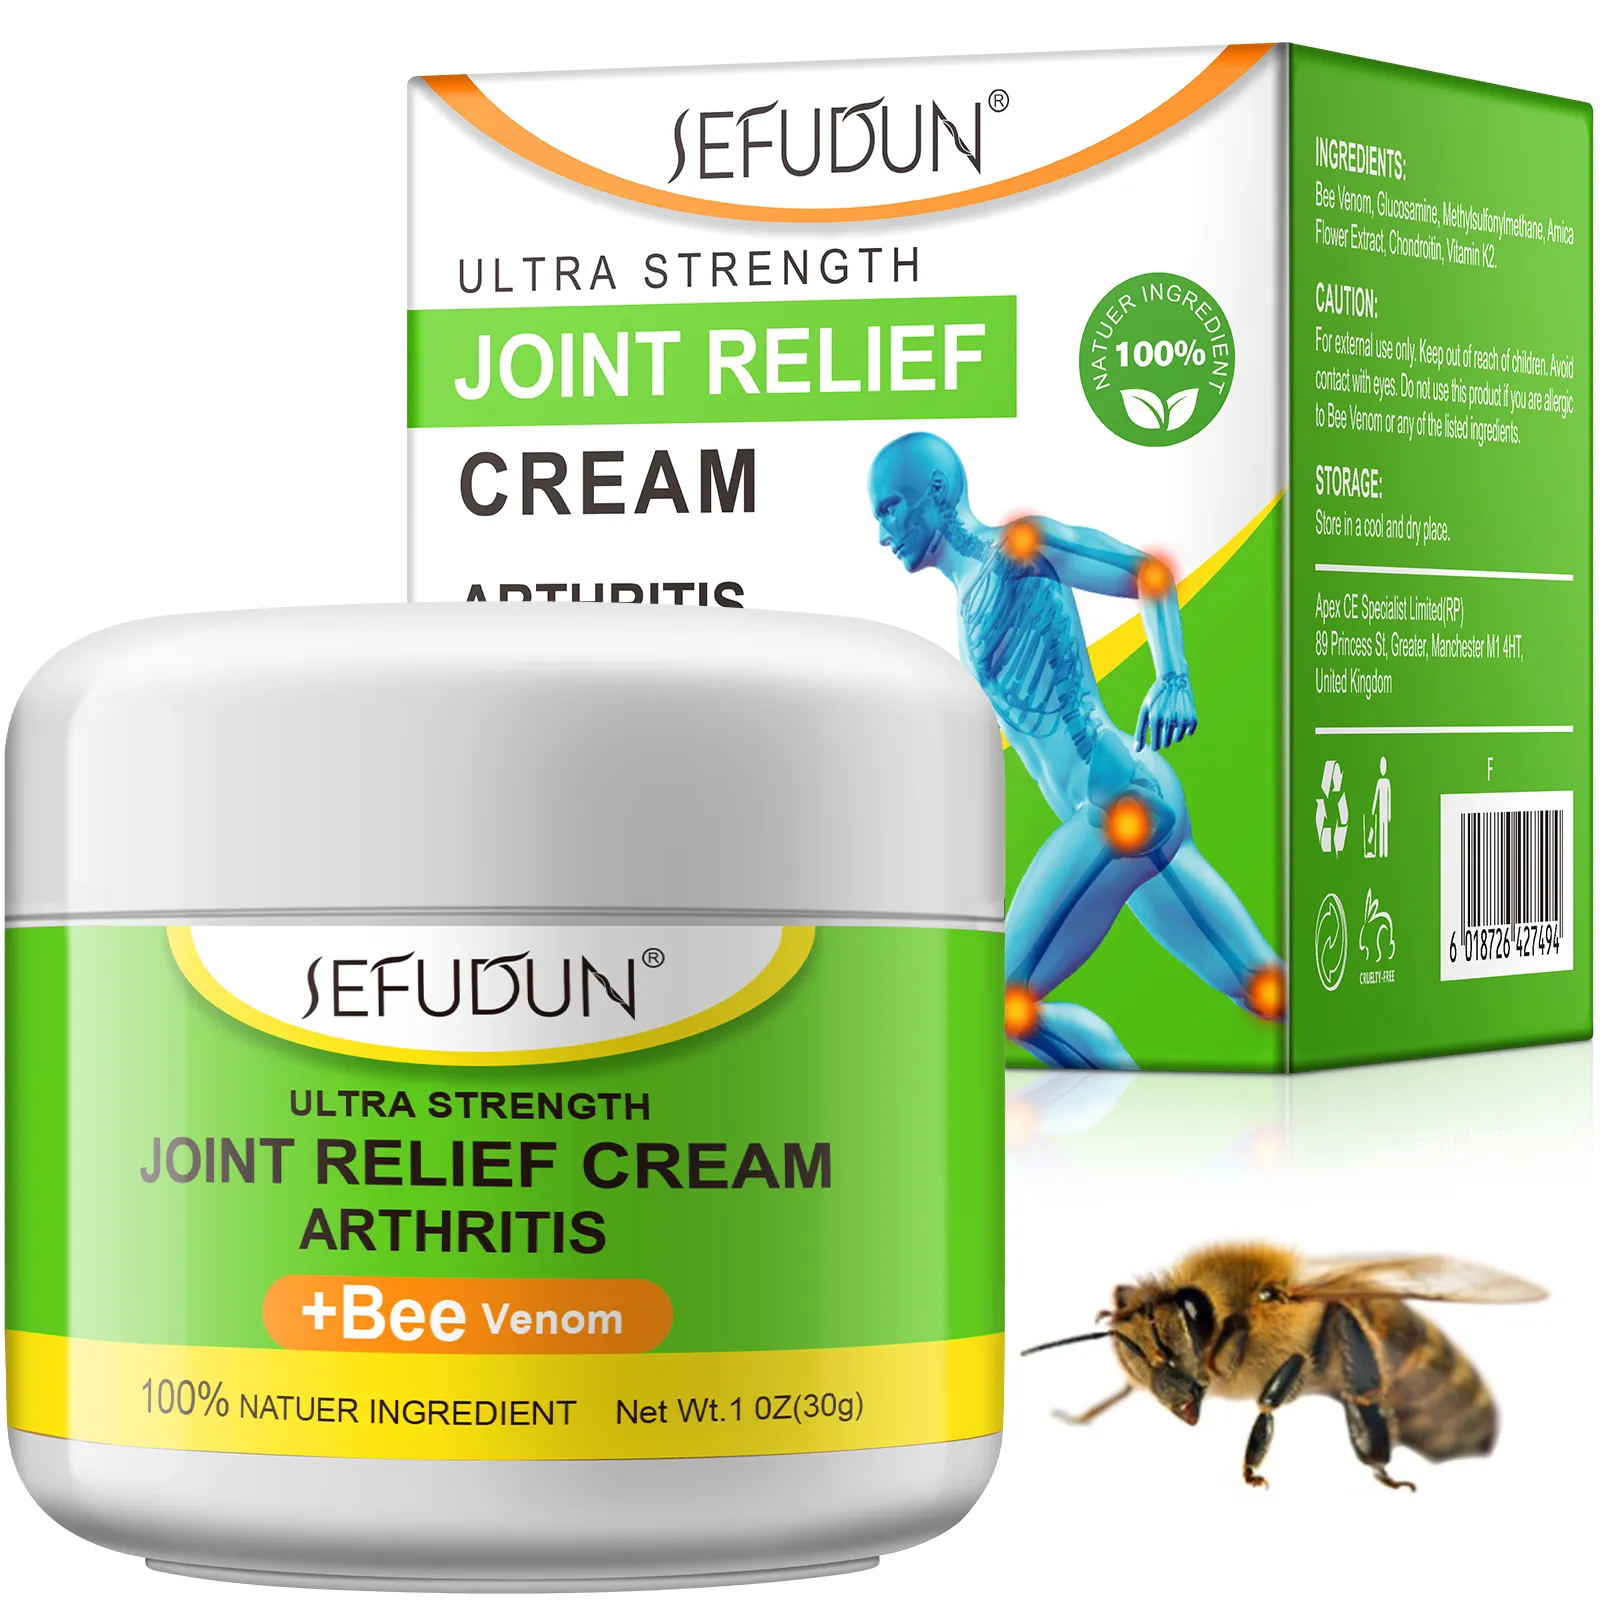 SEFUDUN naturel en gros vitamine K2 venin d'abeille genou épaule oignon crème de massage anti-douleur, crème anti-douleur articulaire du dos